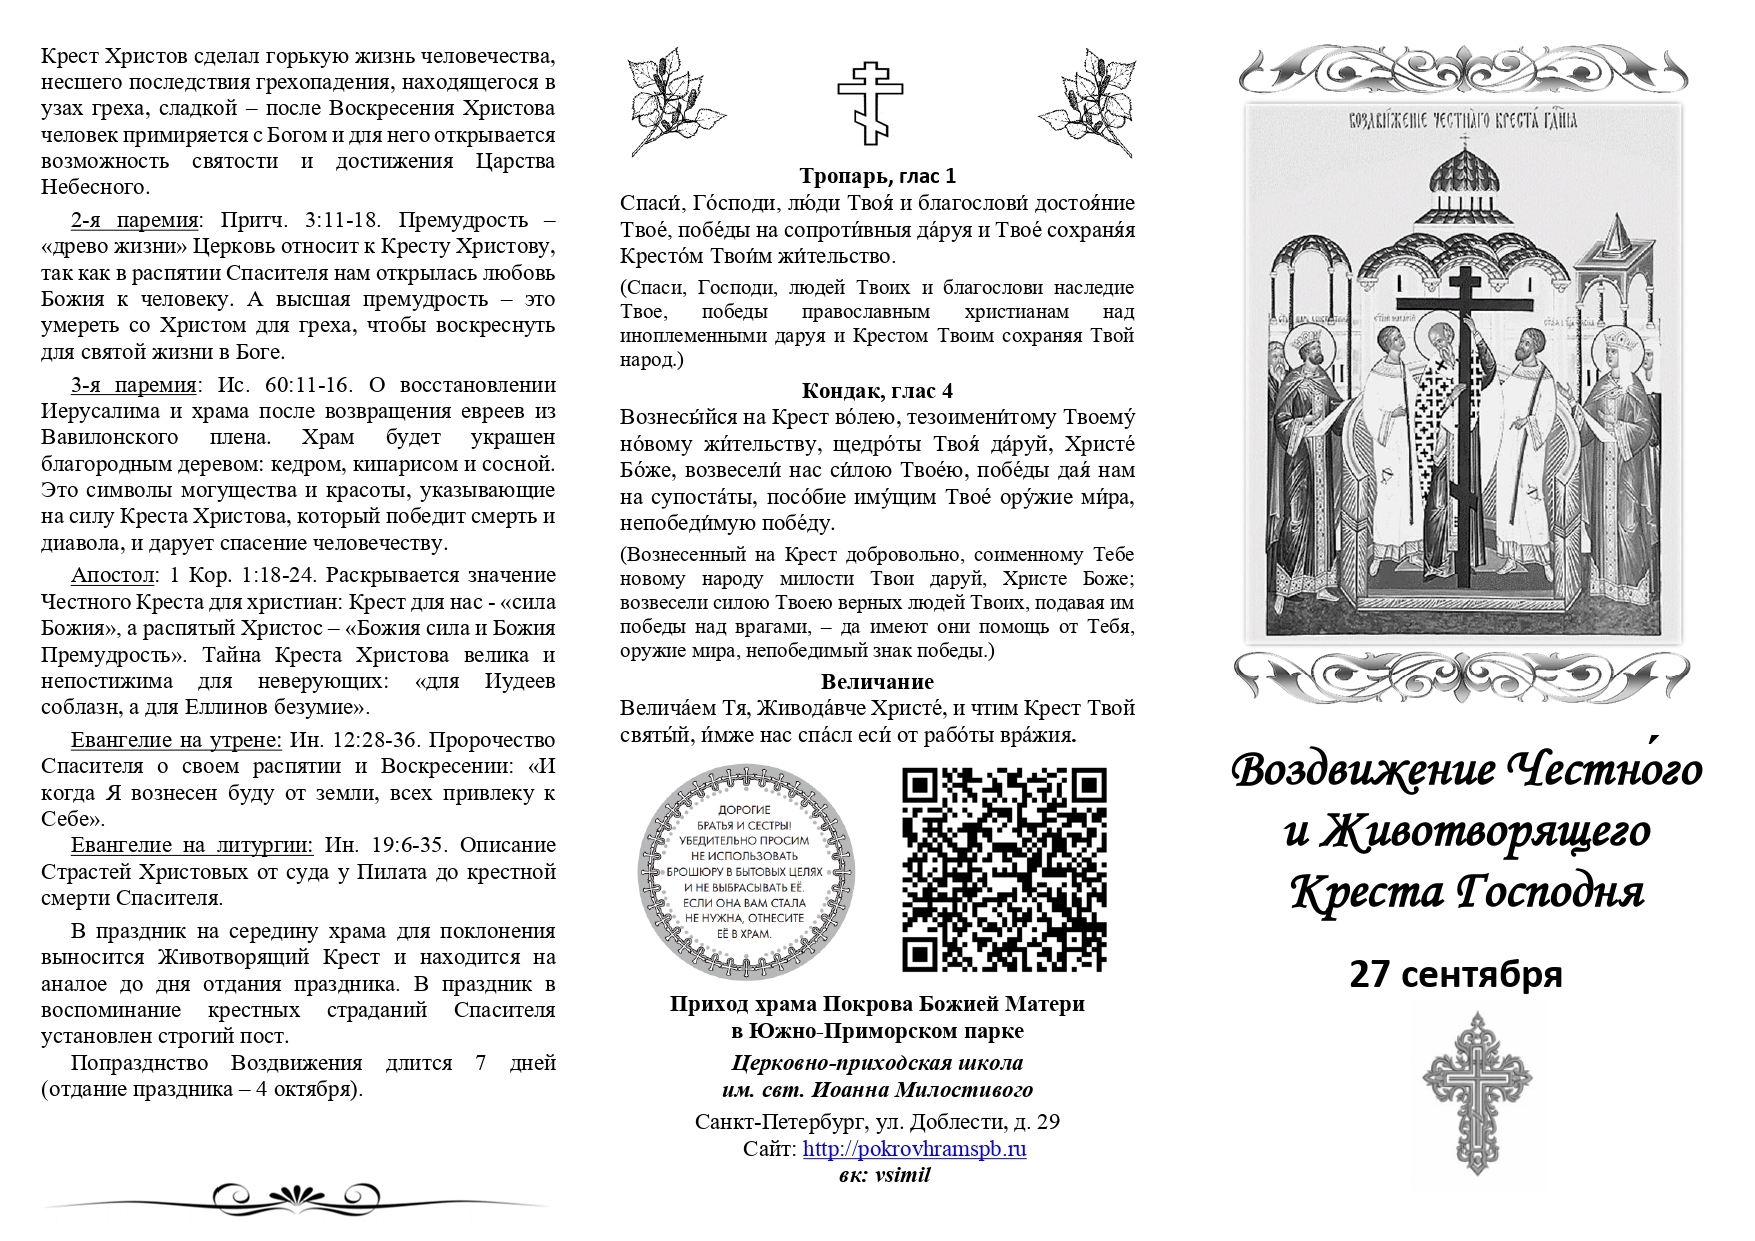 Буклет о празднике Воздвижения Креста Господня